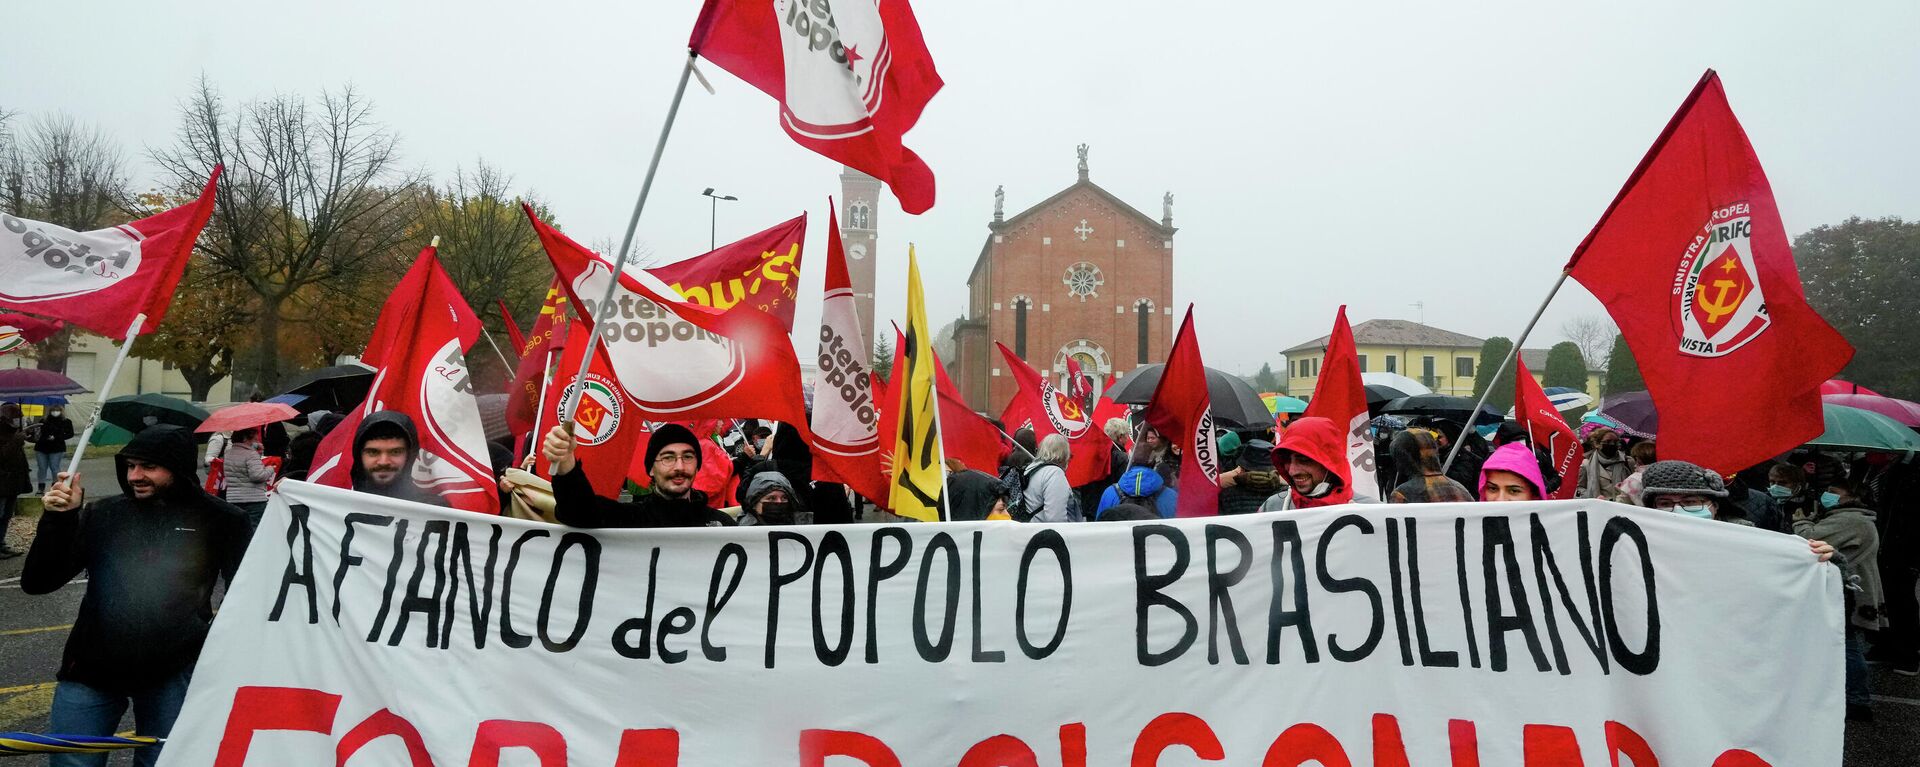 Protestas contra el presidente de Brasil, Jair Bolsonaro, en Italia - Sputnik Mundo, 1920, 01.11.2021